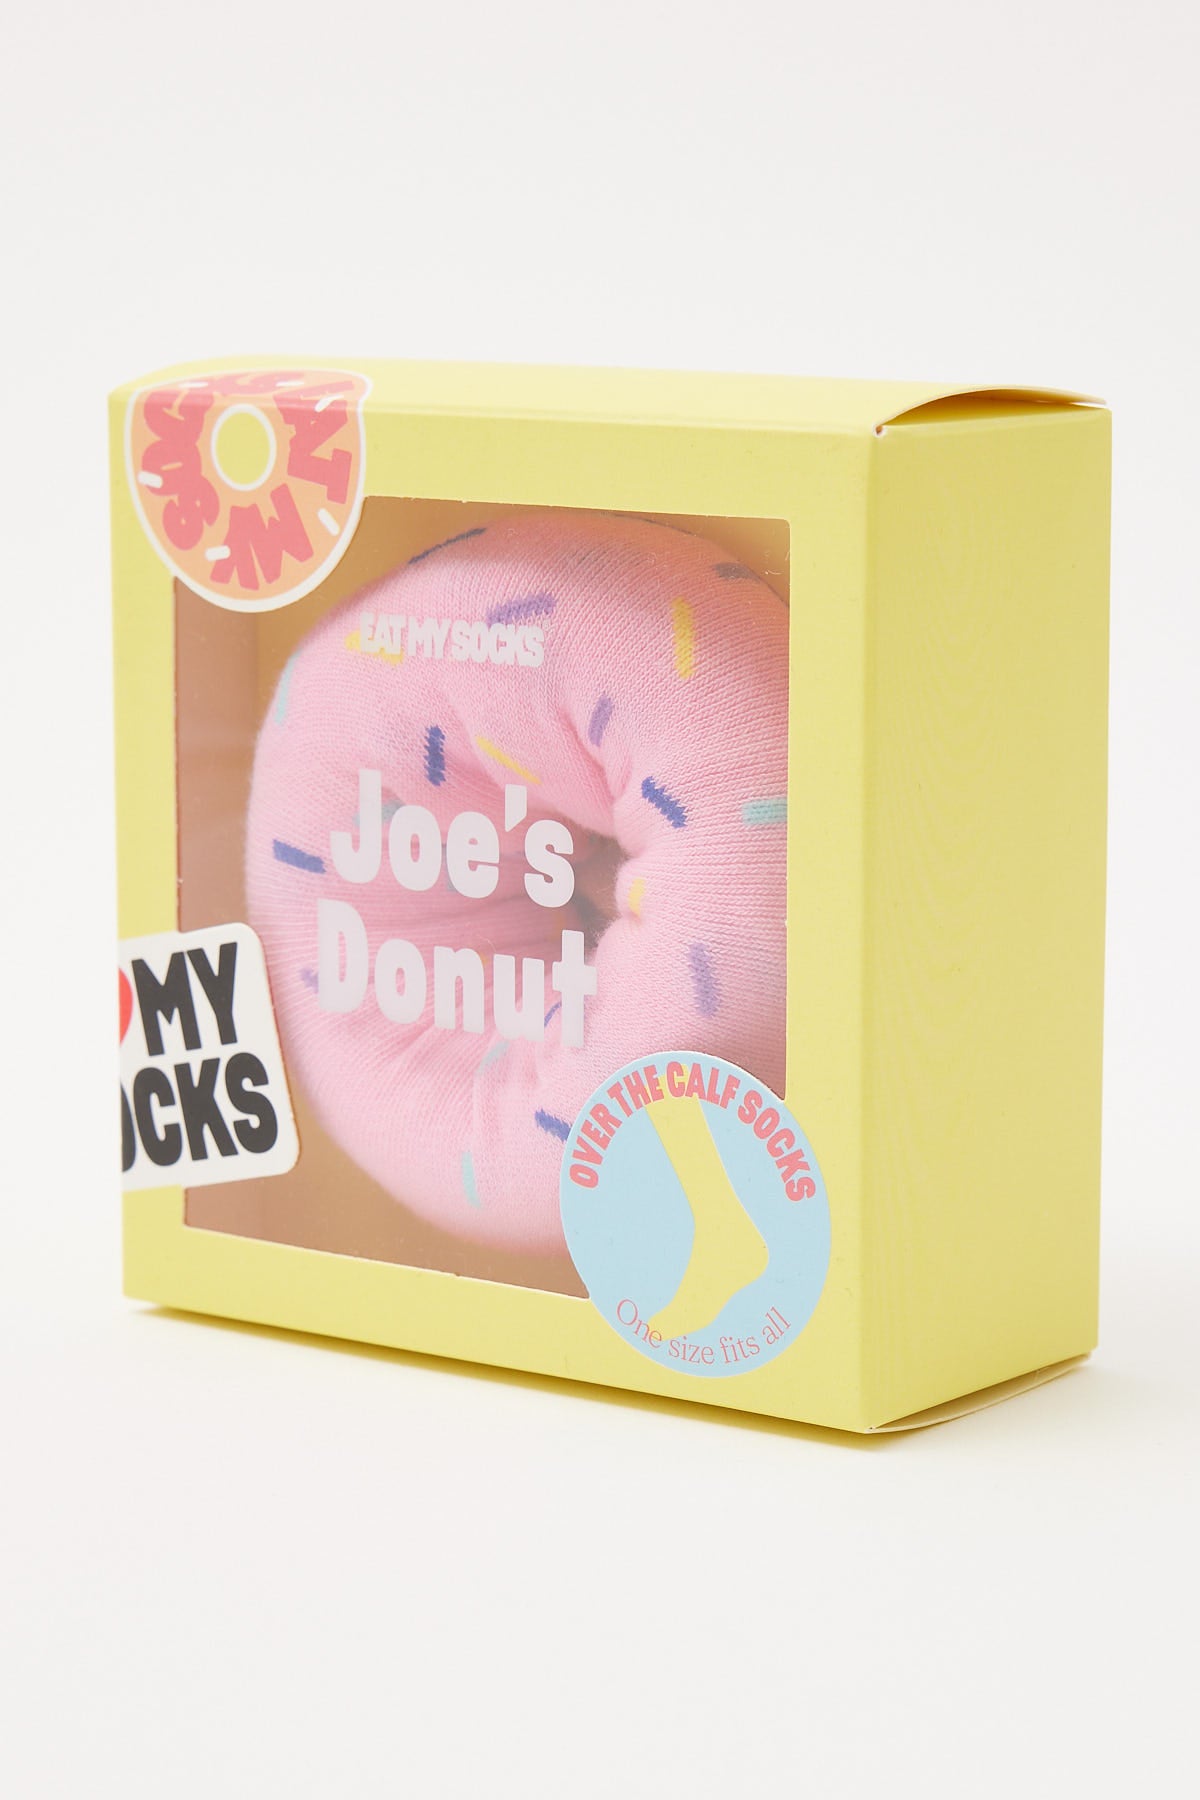 Doiy Socks Joe's Donuts Strawberry